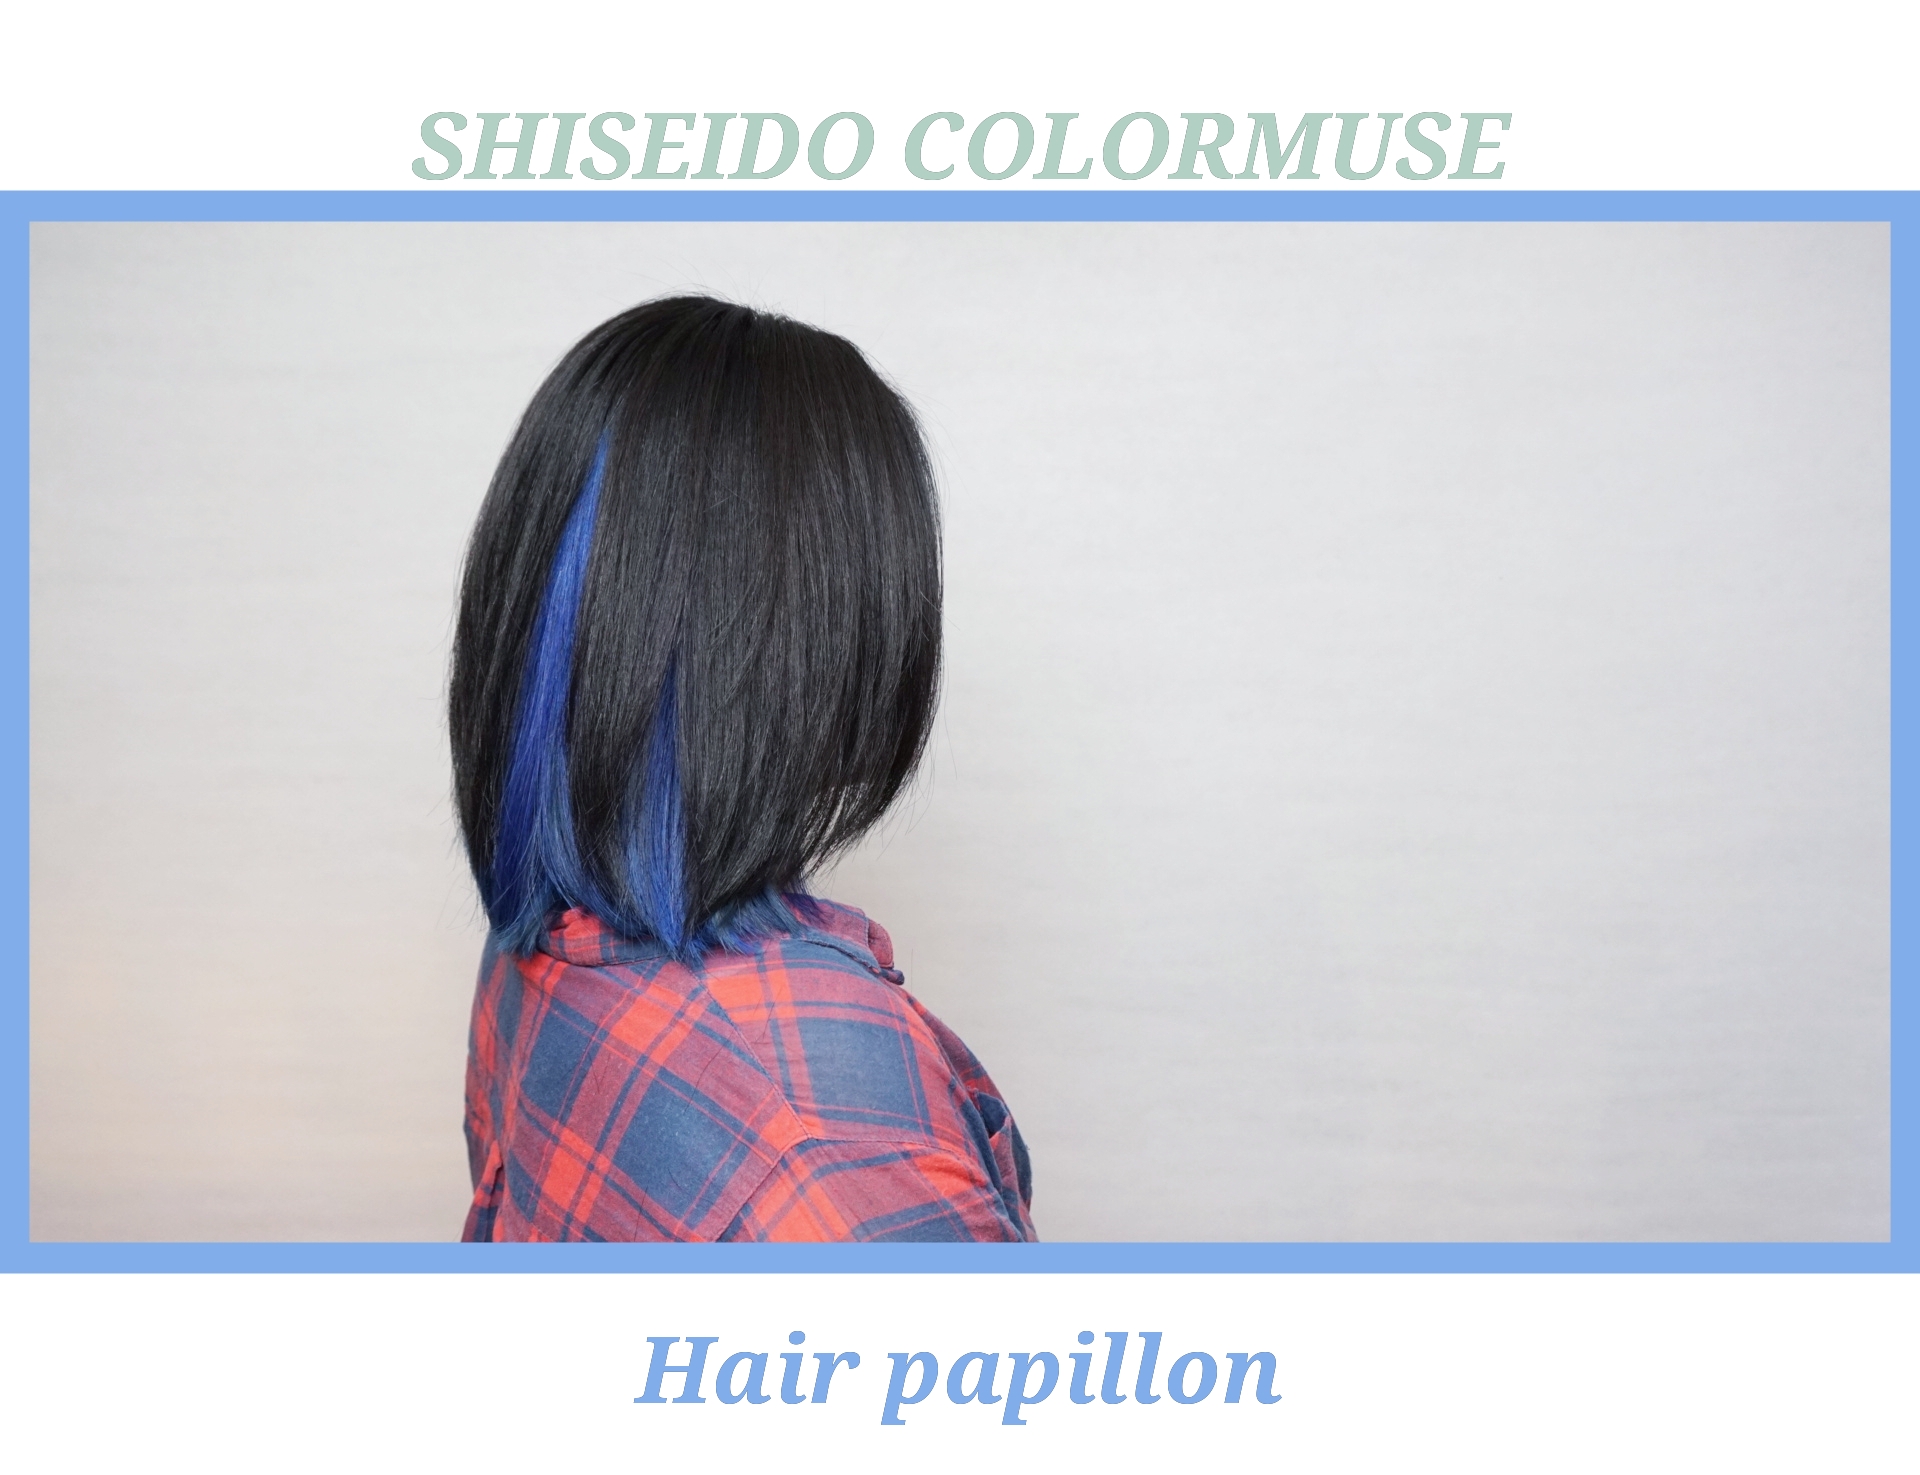 作品參考 / 最新消息:shiseido colormuse